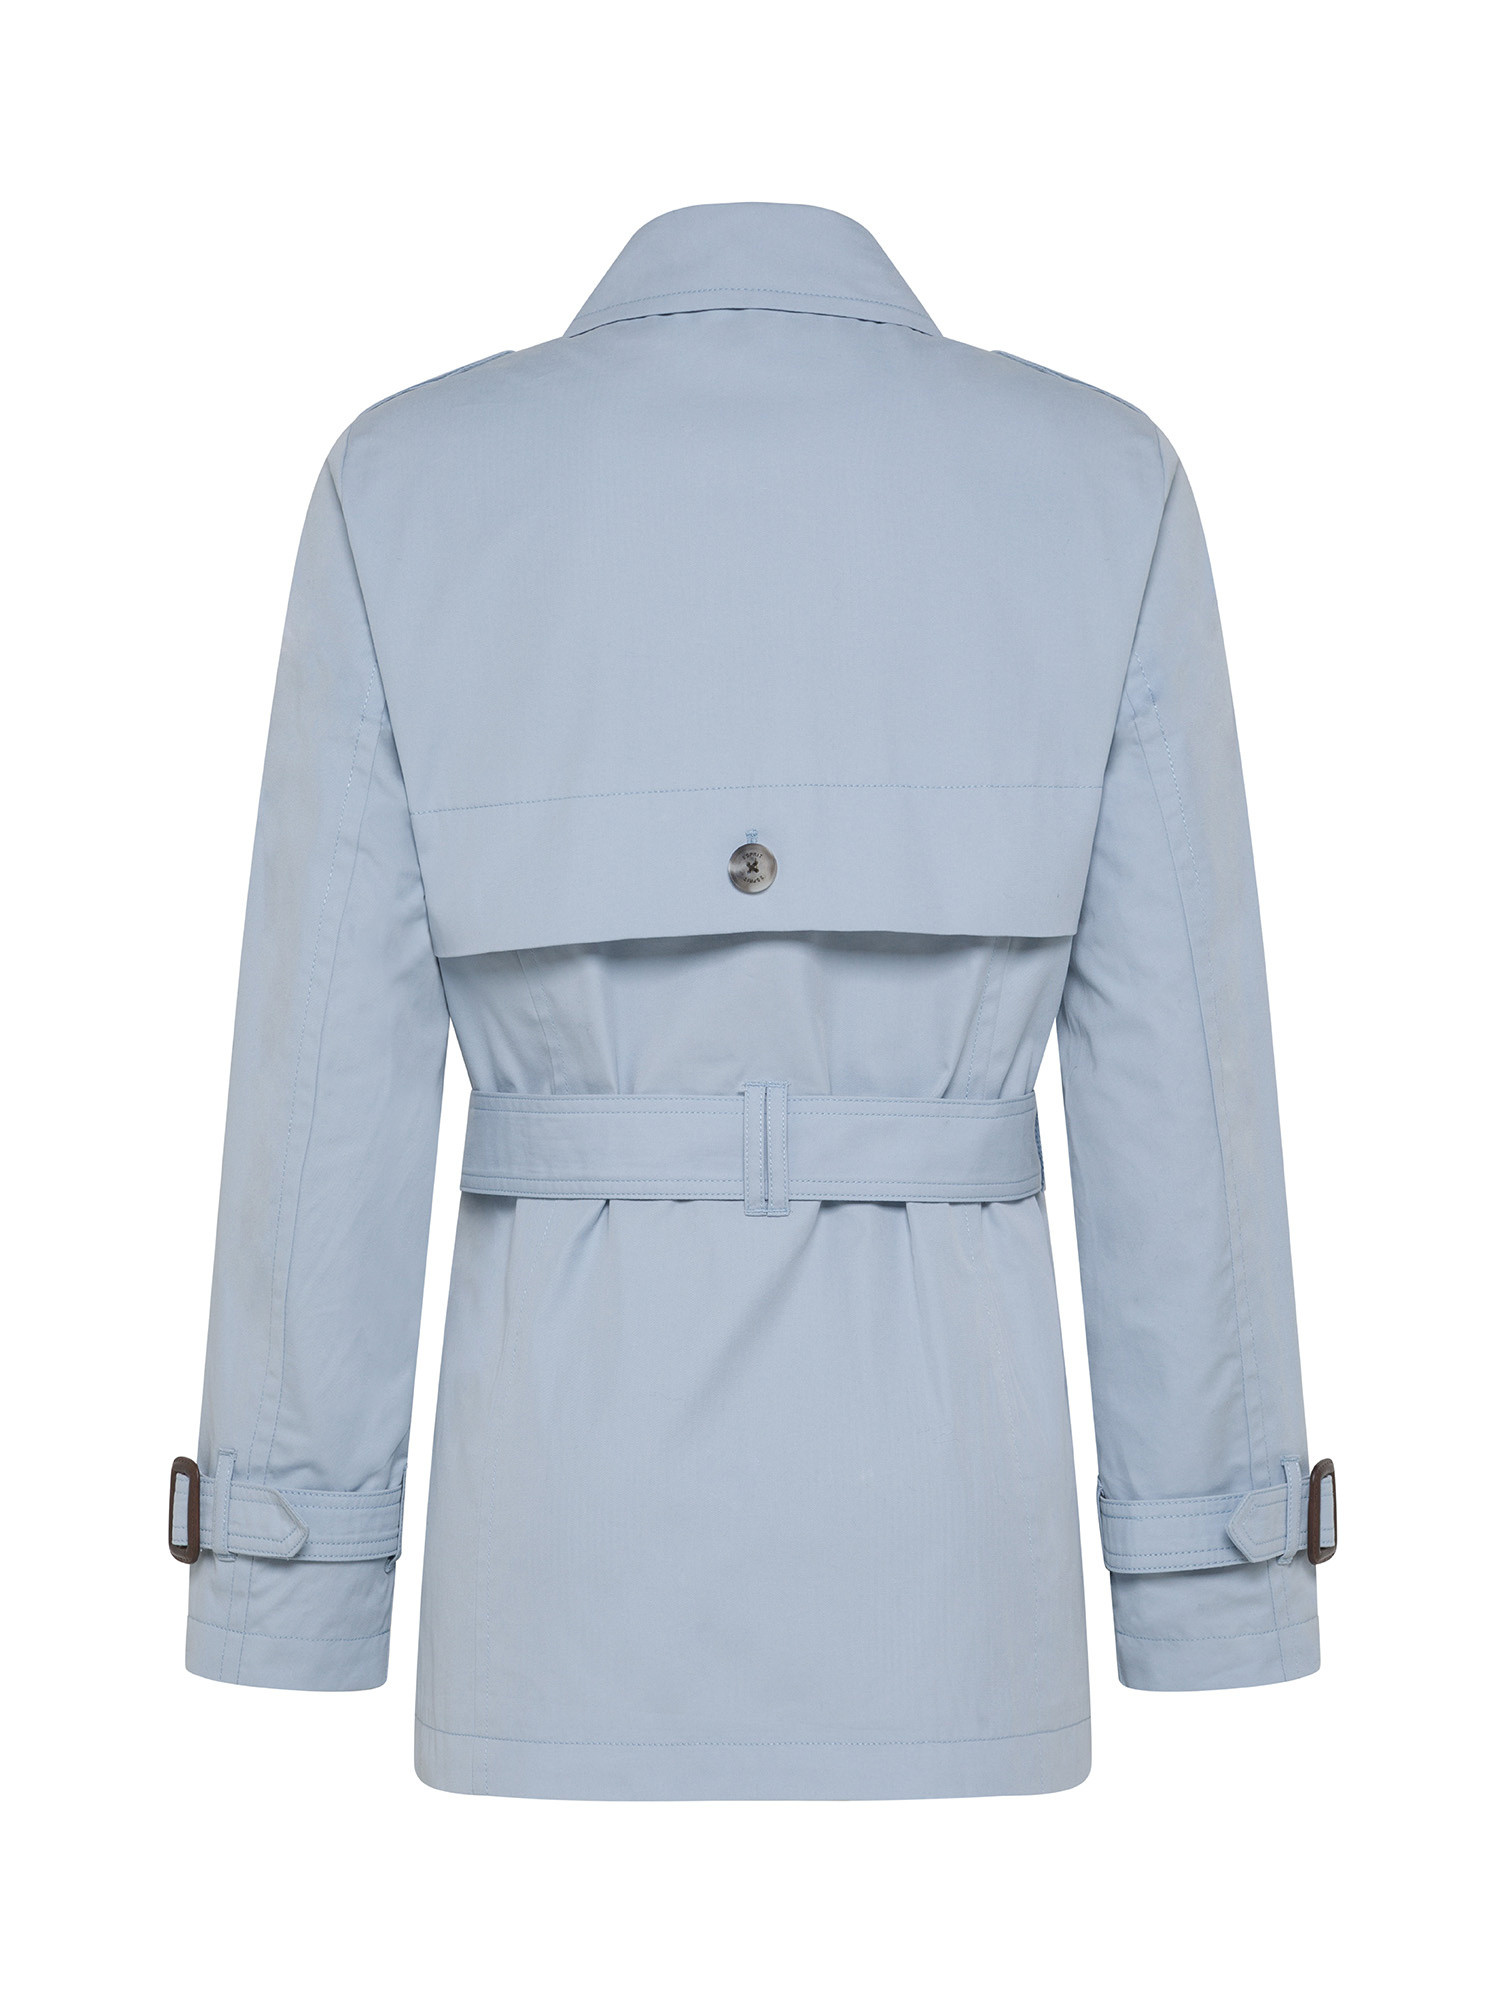 Esprit - Short trench coat with belt, Light Blue, large image number 1